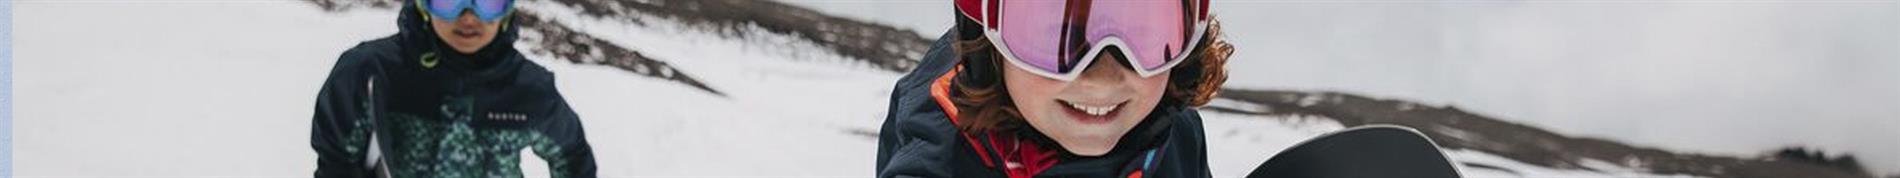 Spyder Kids Ski & Snowboard Clothing (Ages 6-16) 